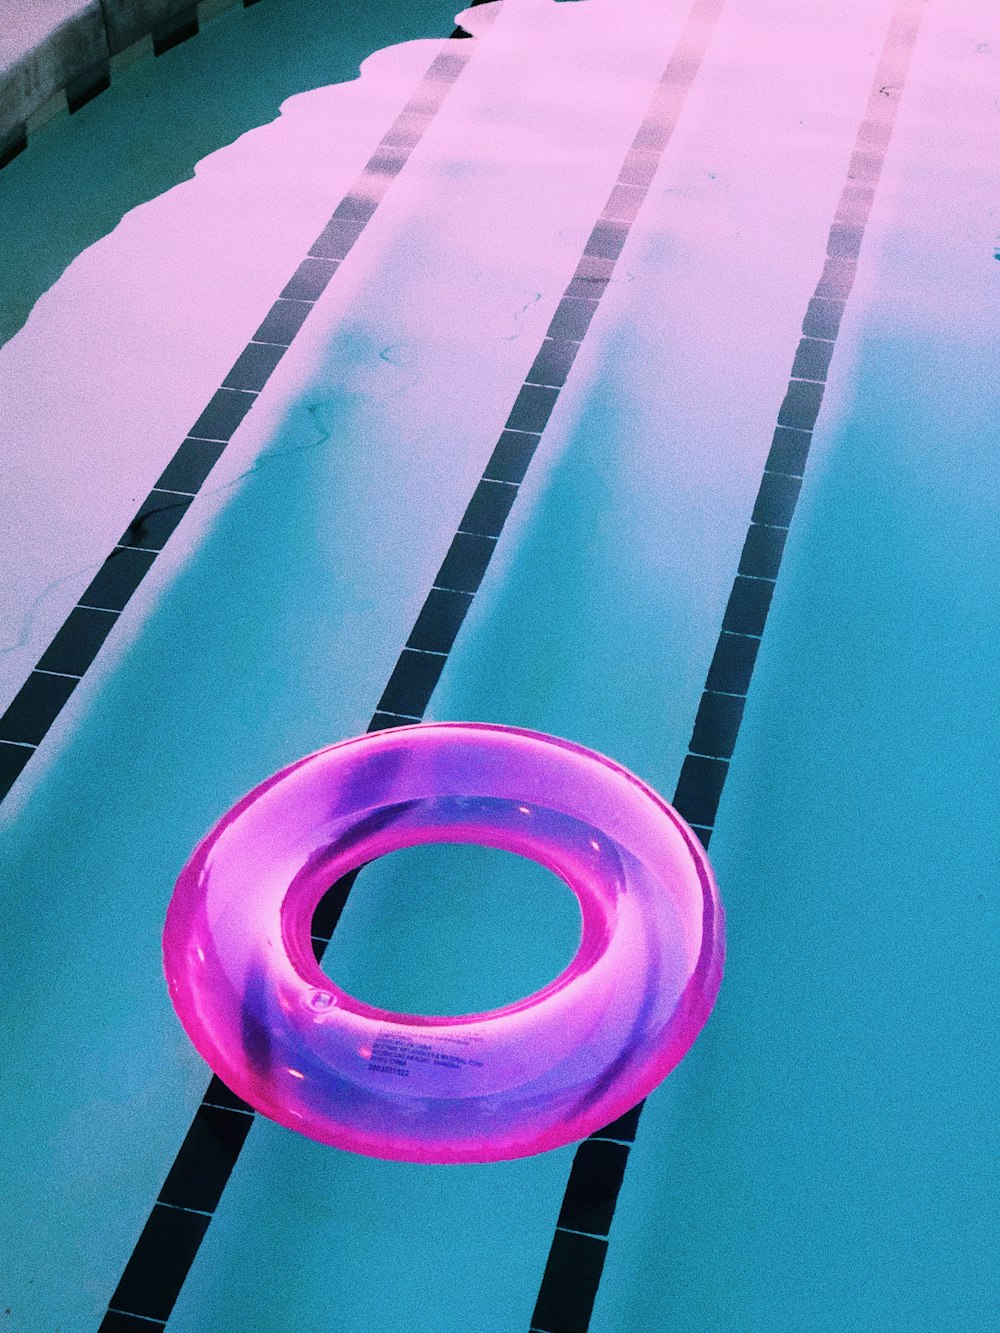 anello gonfiabile rosa in piscina